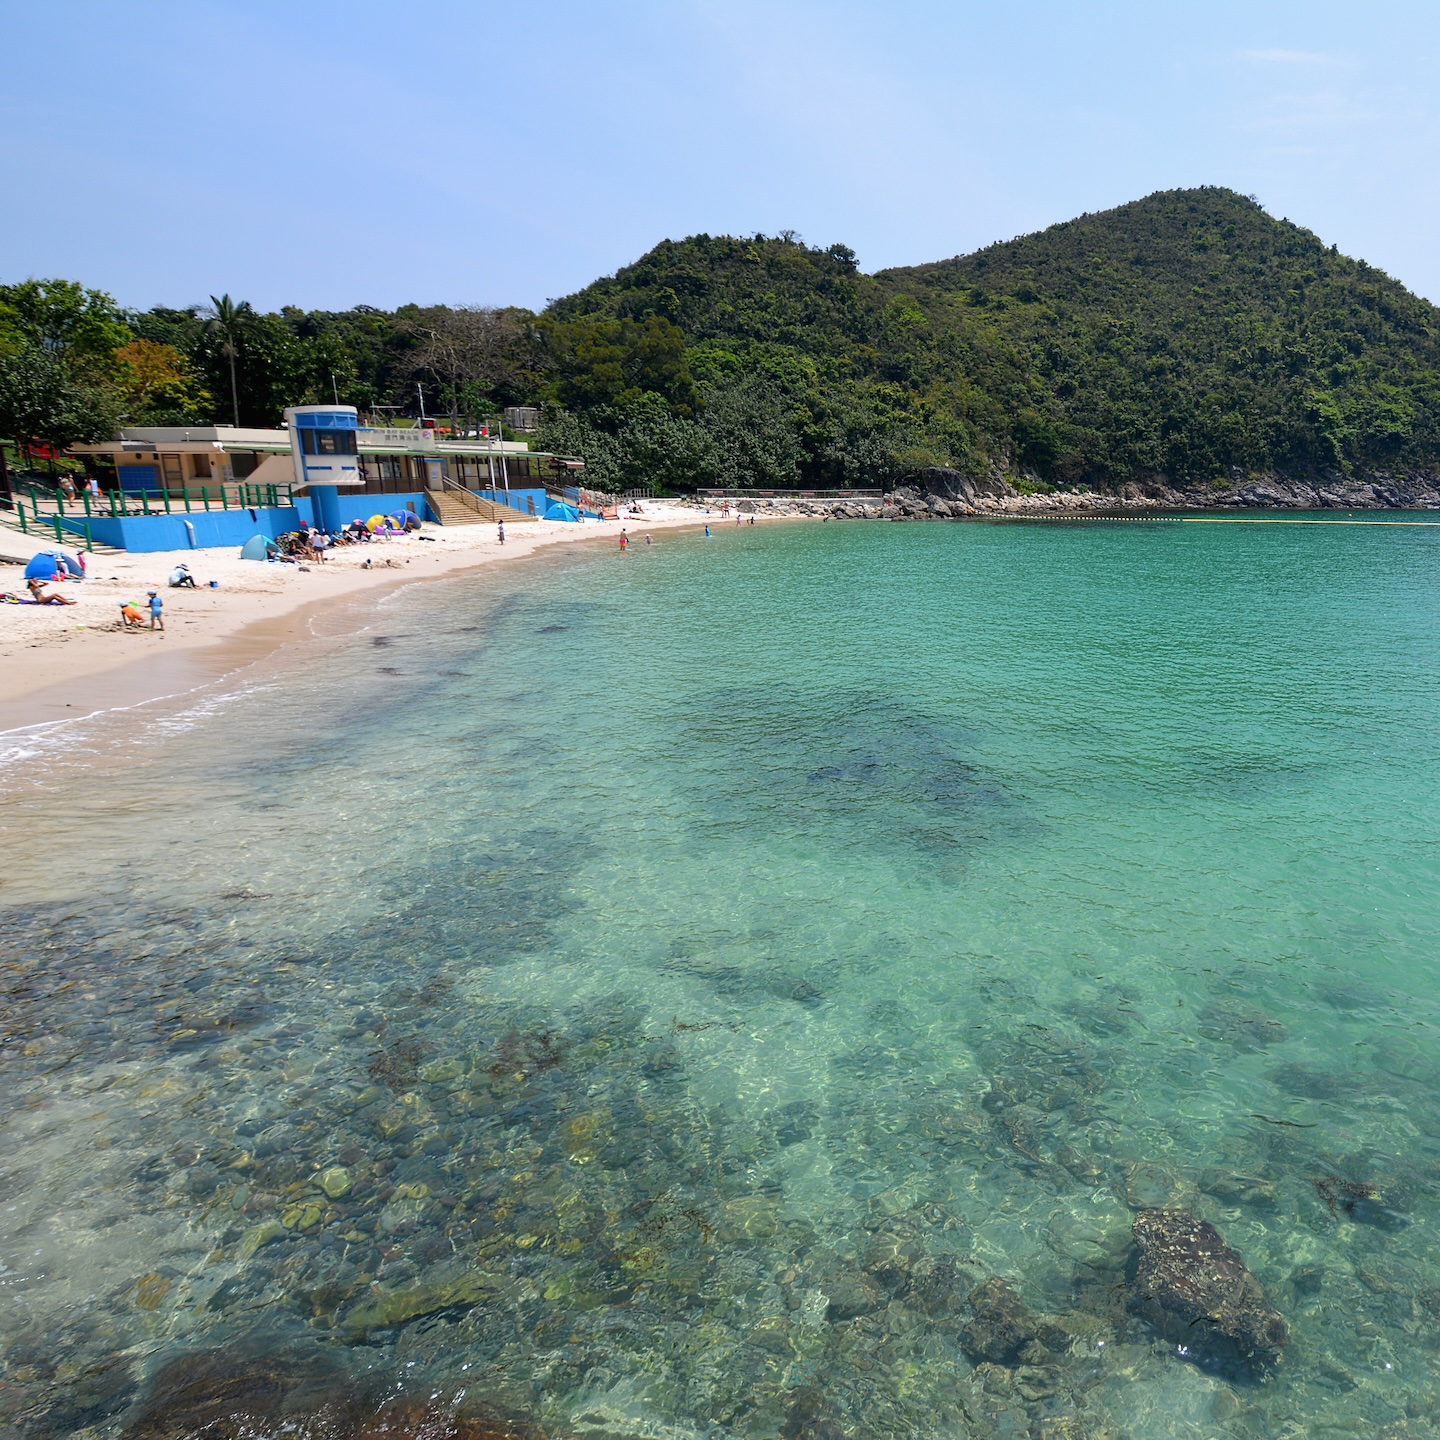 Best Hong Kong Beaches, Beaches In Hong Kong: Hap Mun Bay Beach